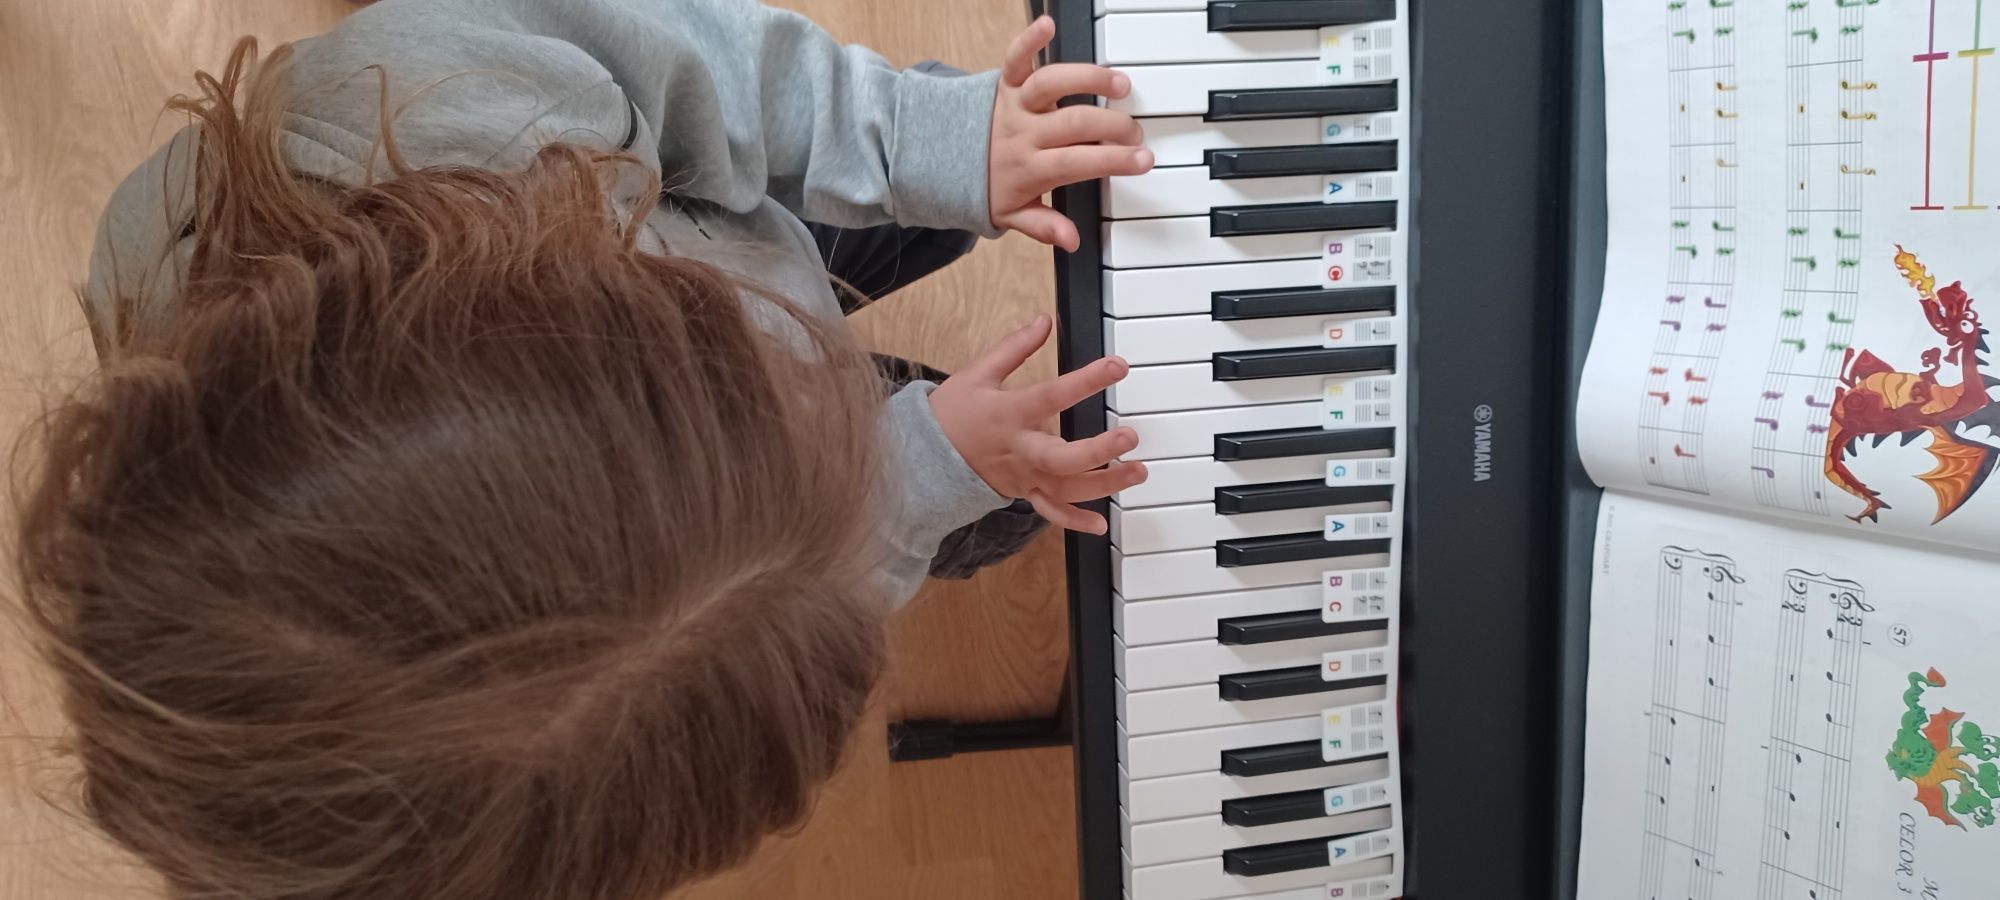 Lectii de muzica  pian si canto copii